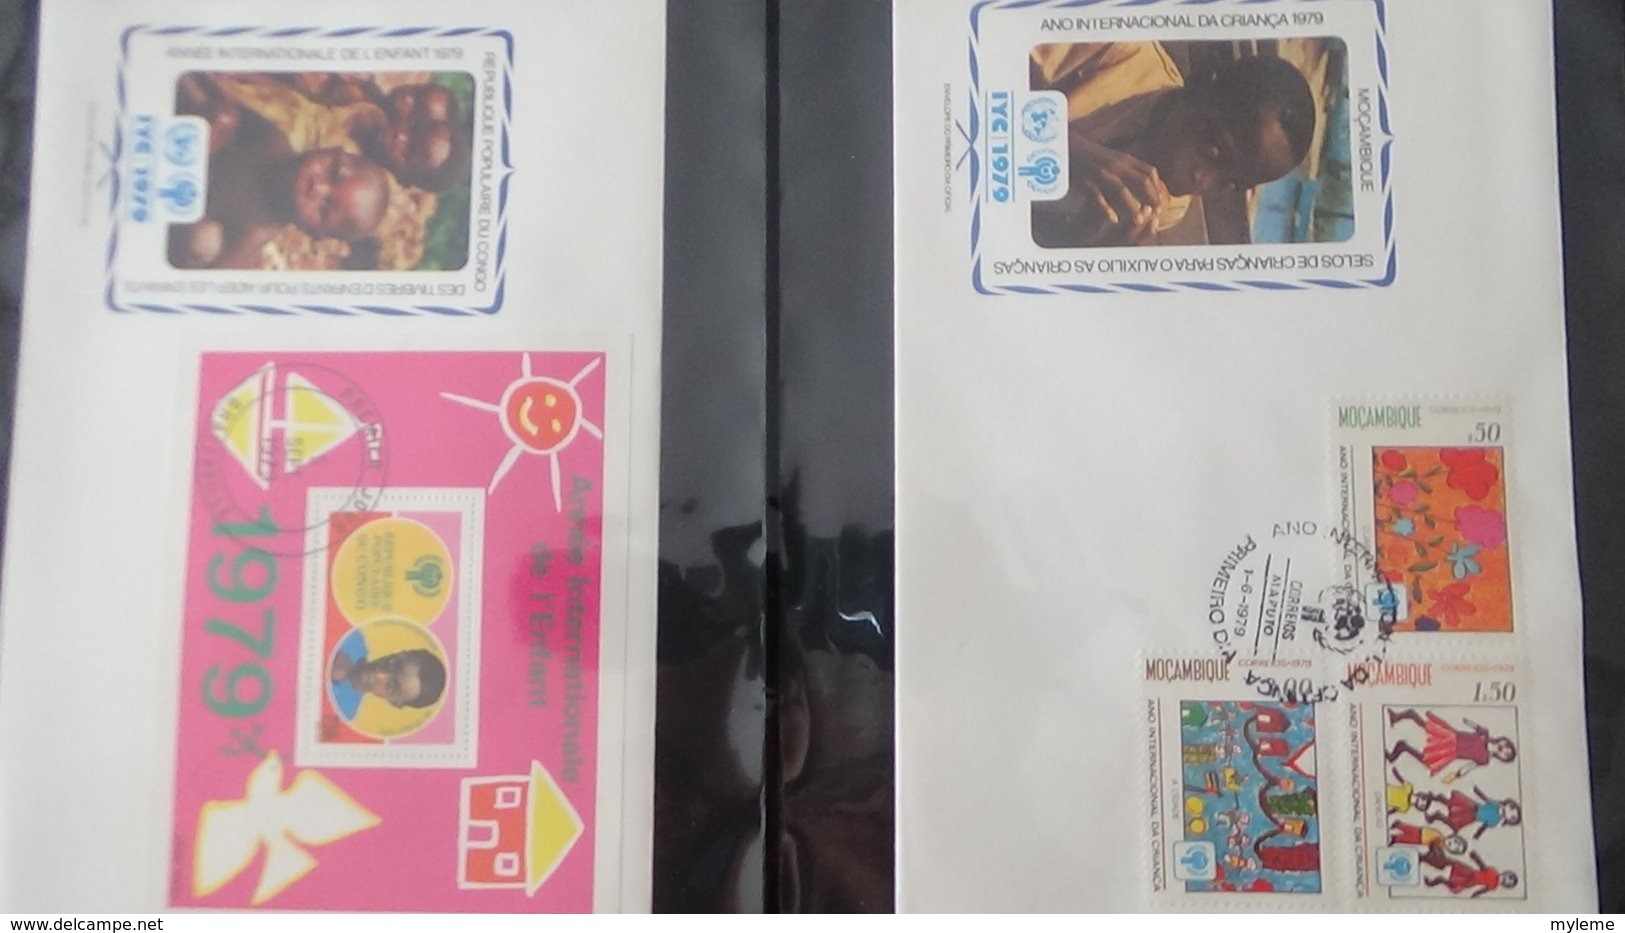 Dispersion d'une collection d'enveloppe 1er jour et autres dont 111 sur le thème de l'enfant (UNICEF)